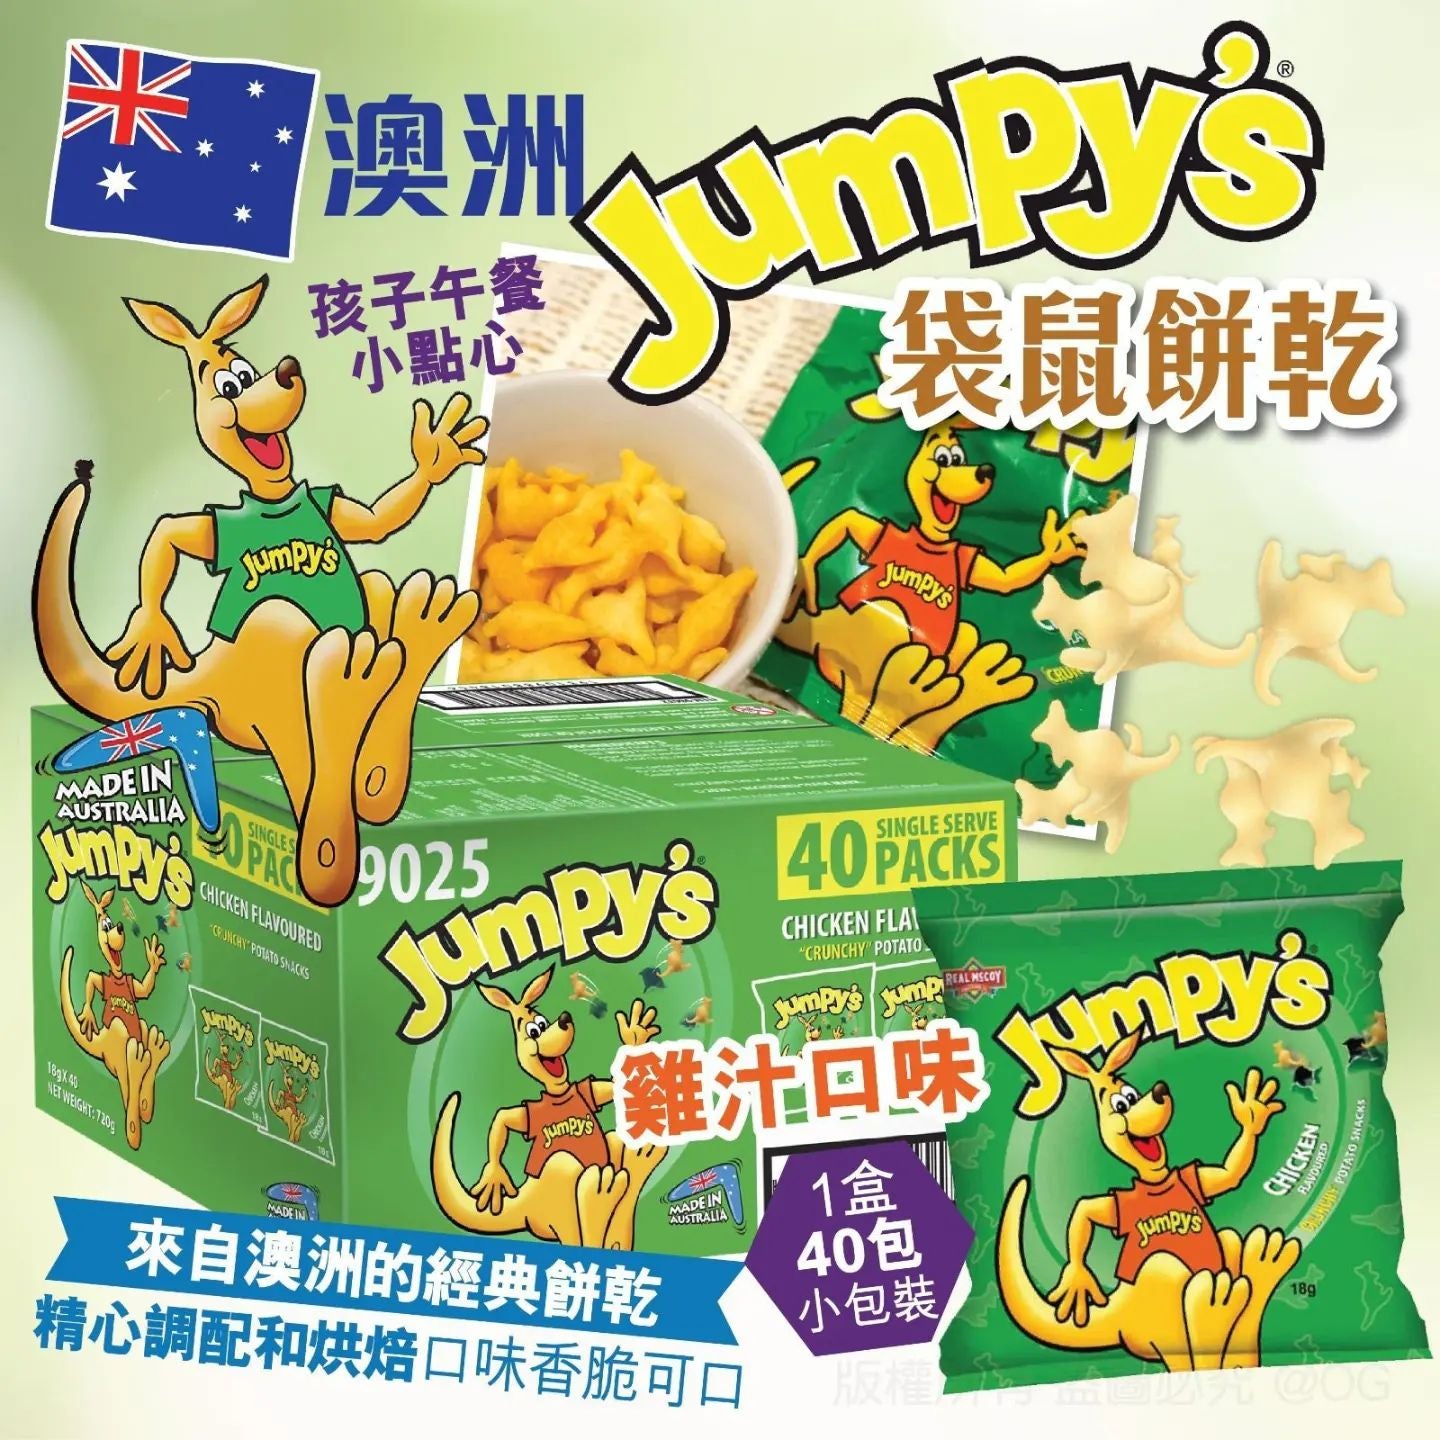 澳洲 Jumpy's 袋鼠餅乾 (1盒18g x 40包) - 約1月上旬左右到貨